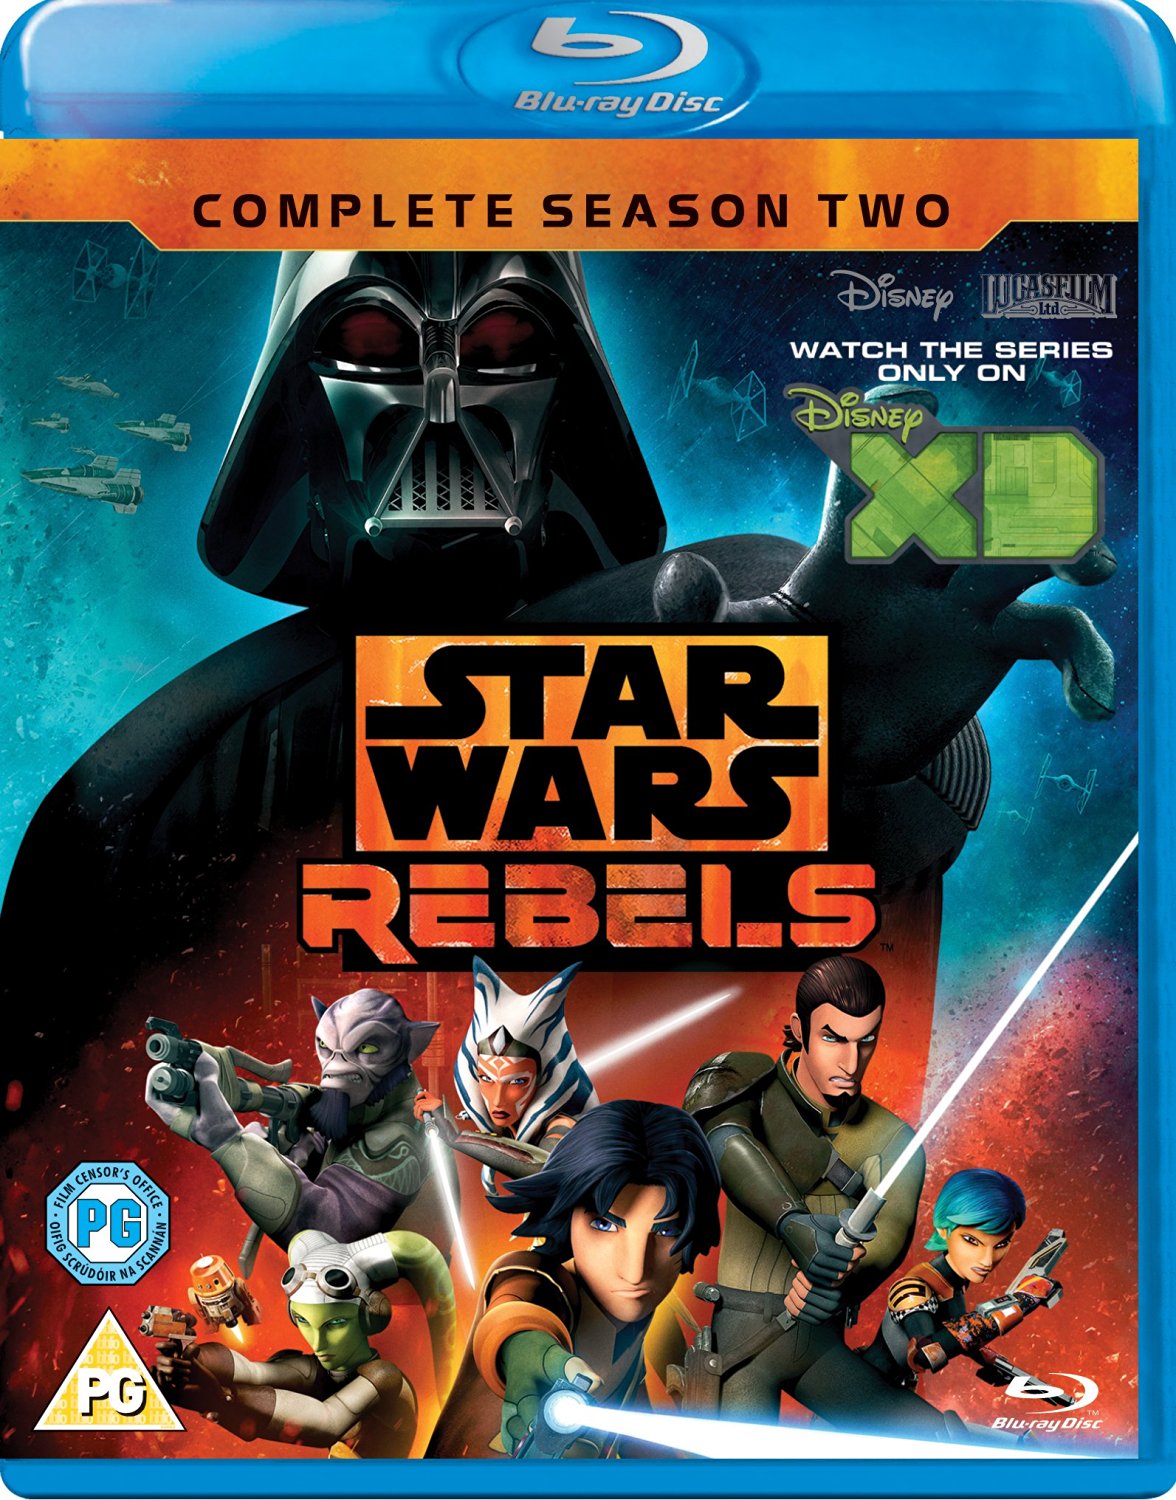 Star Wars Rebels Season 2 review